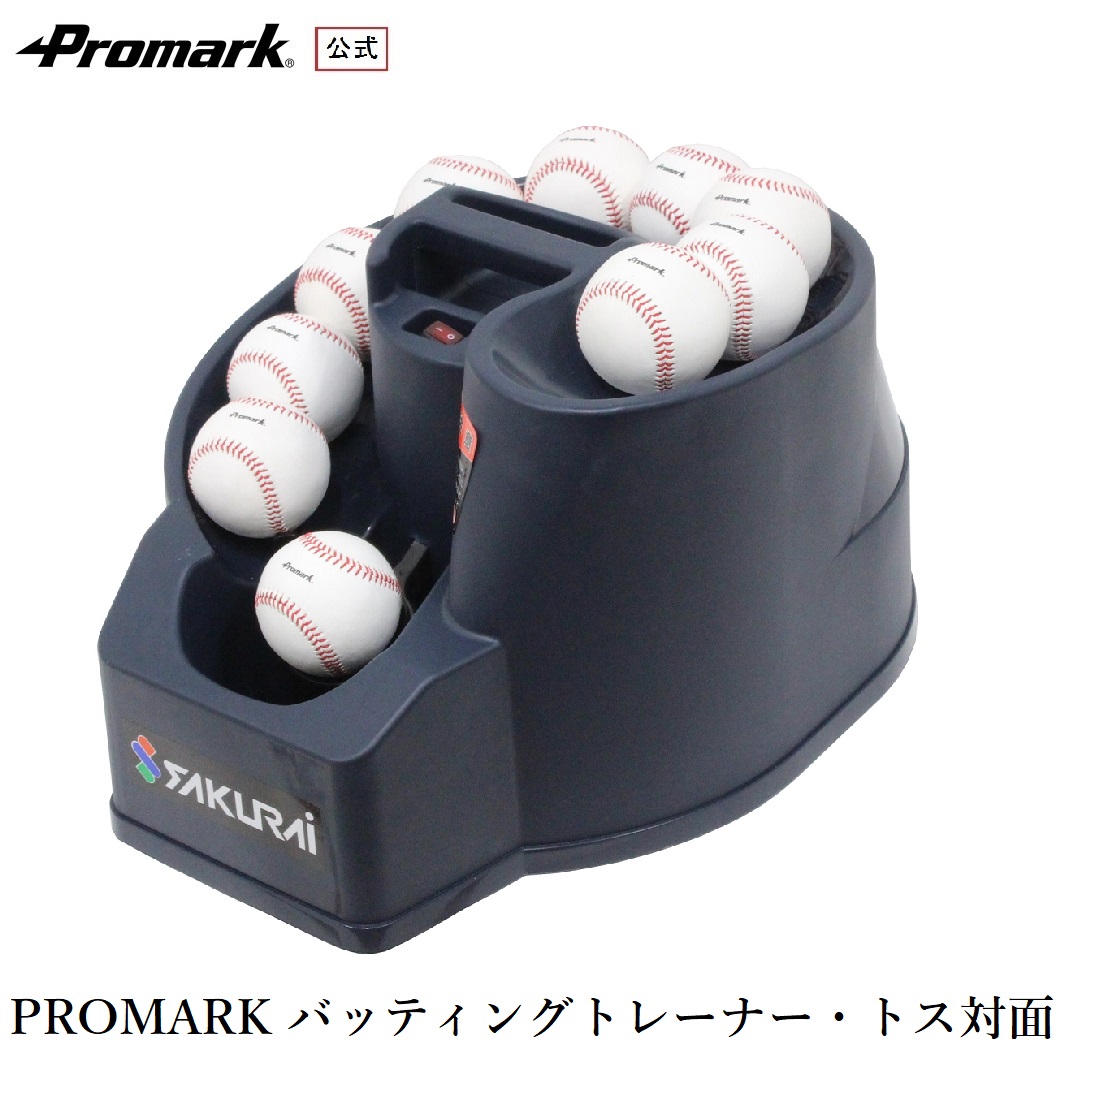 全品送料無料 PROMARK プロマーク バッティングトレーナー トス対面 硬式 軟式 ソフトボール対応 トスマシン